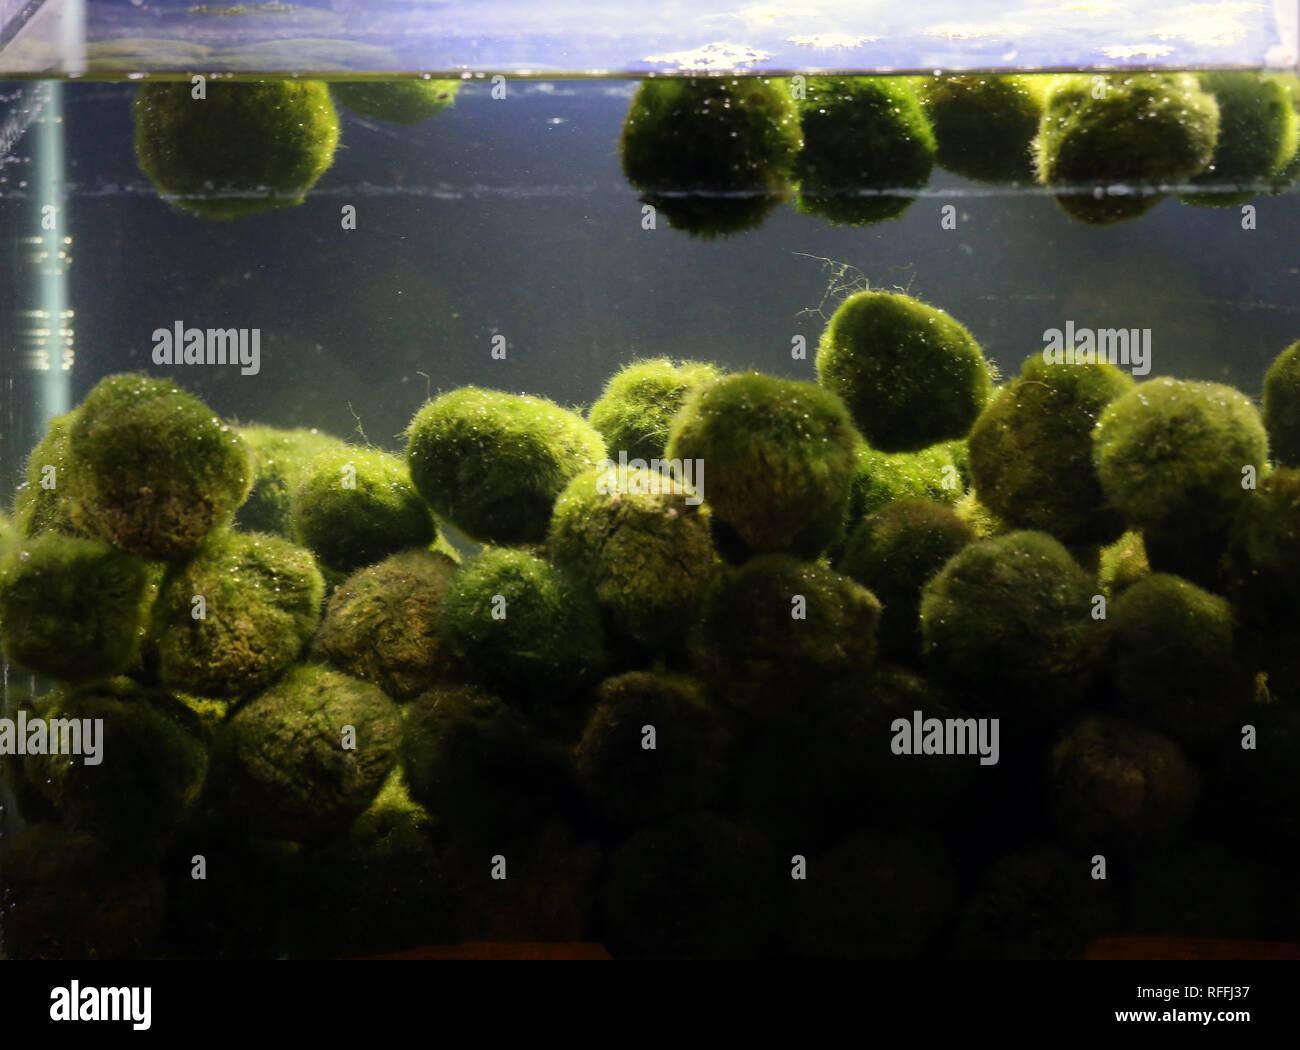 Cladophora plant balls in aquarium Stock Photo